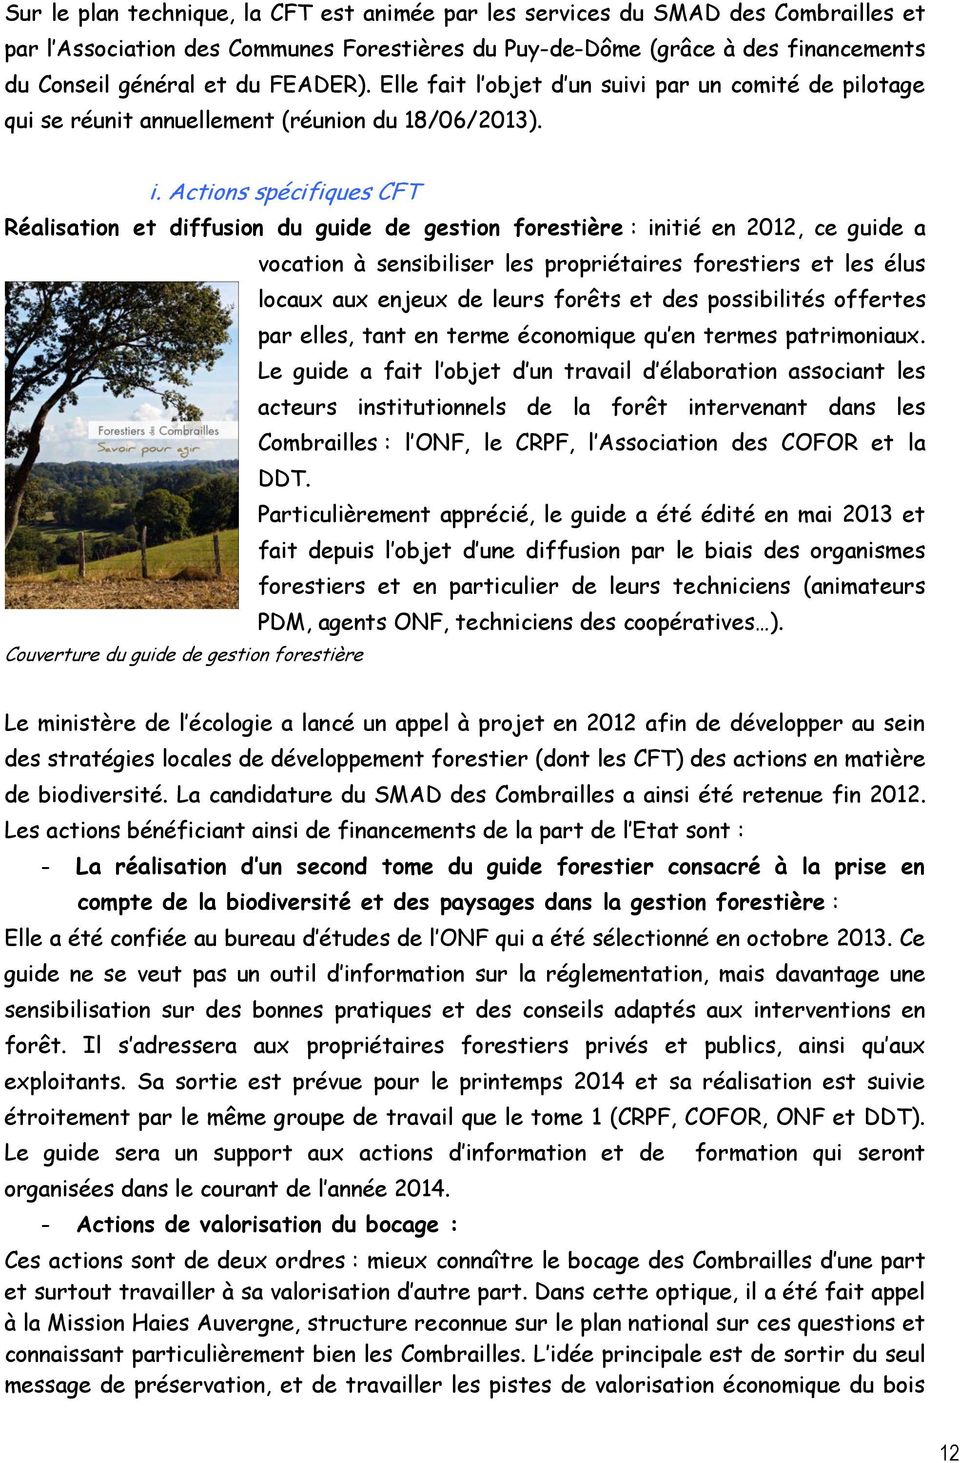 Actions spécifiques CFT Réalisation et diffusion du guide de gestion forestière : initié en 2012, ce guide a vocation à sensibiliser les propriétaires forestiers et les élus locaux aux enjeux de